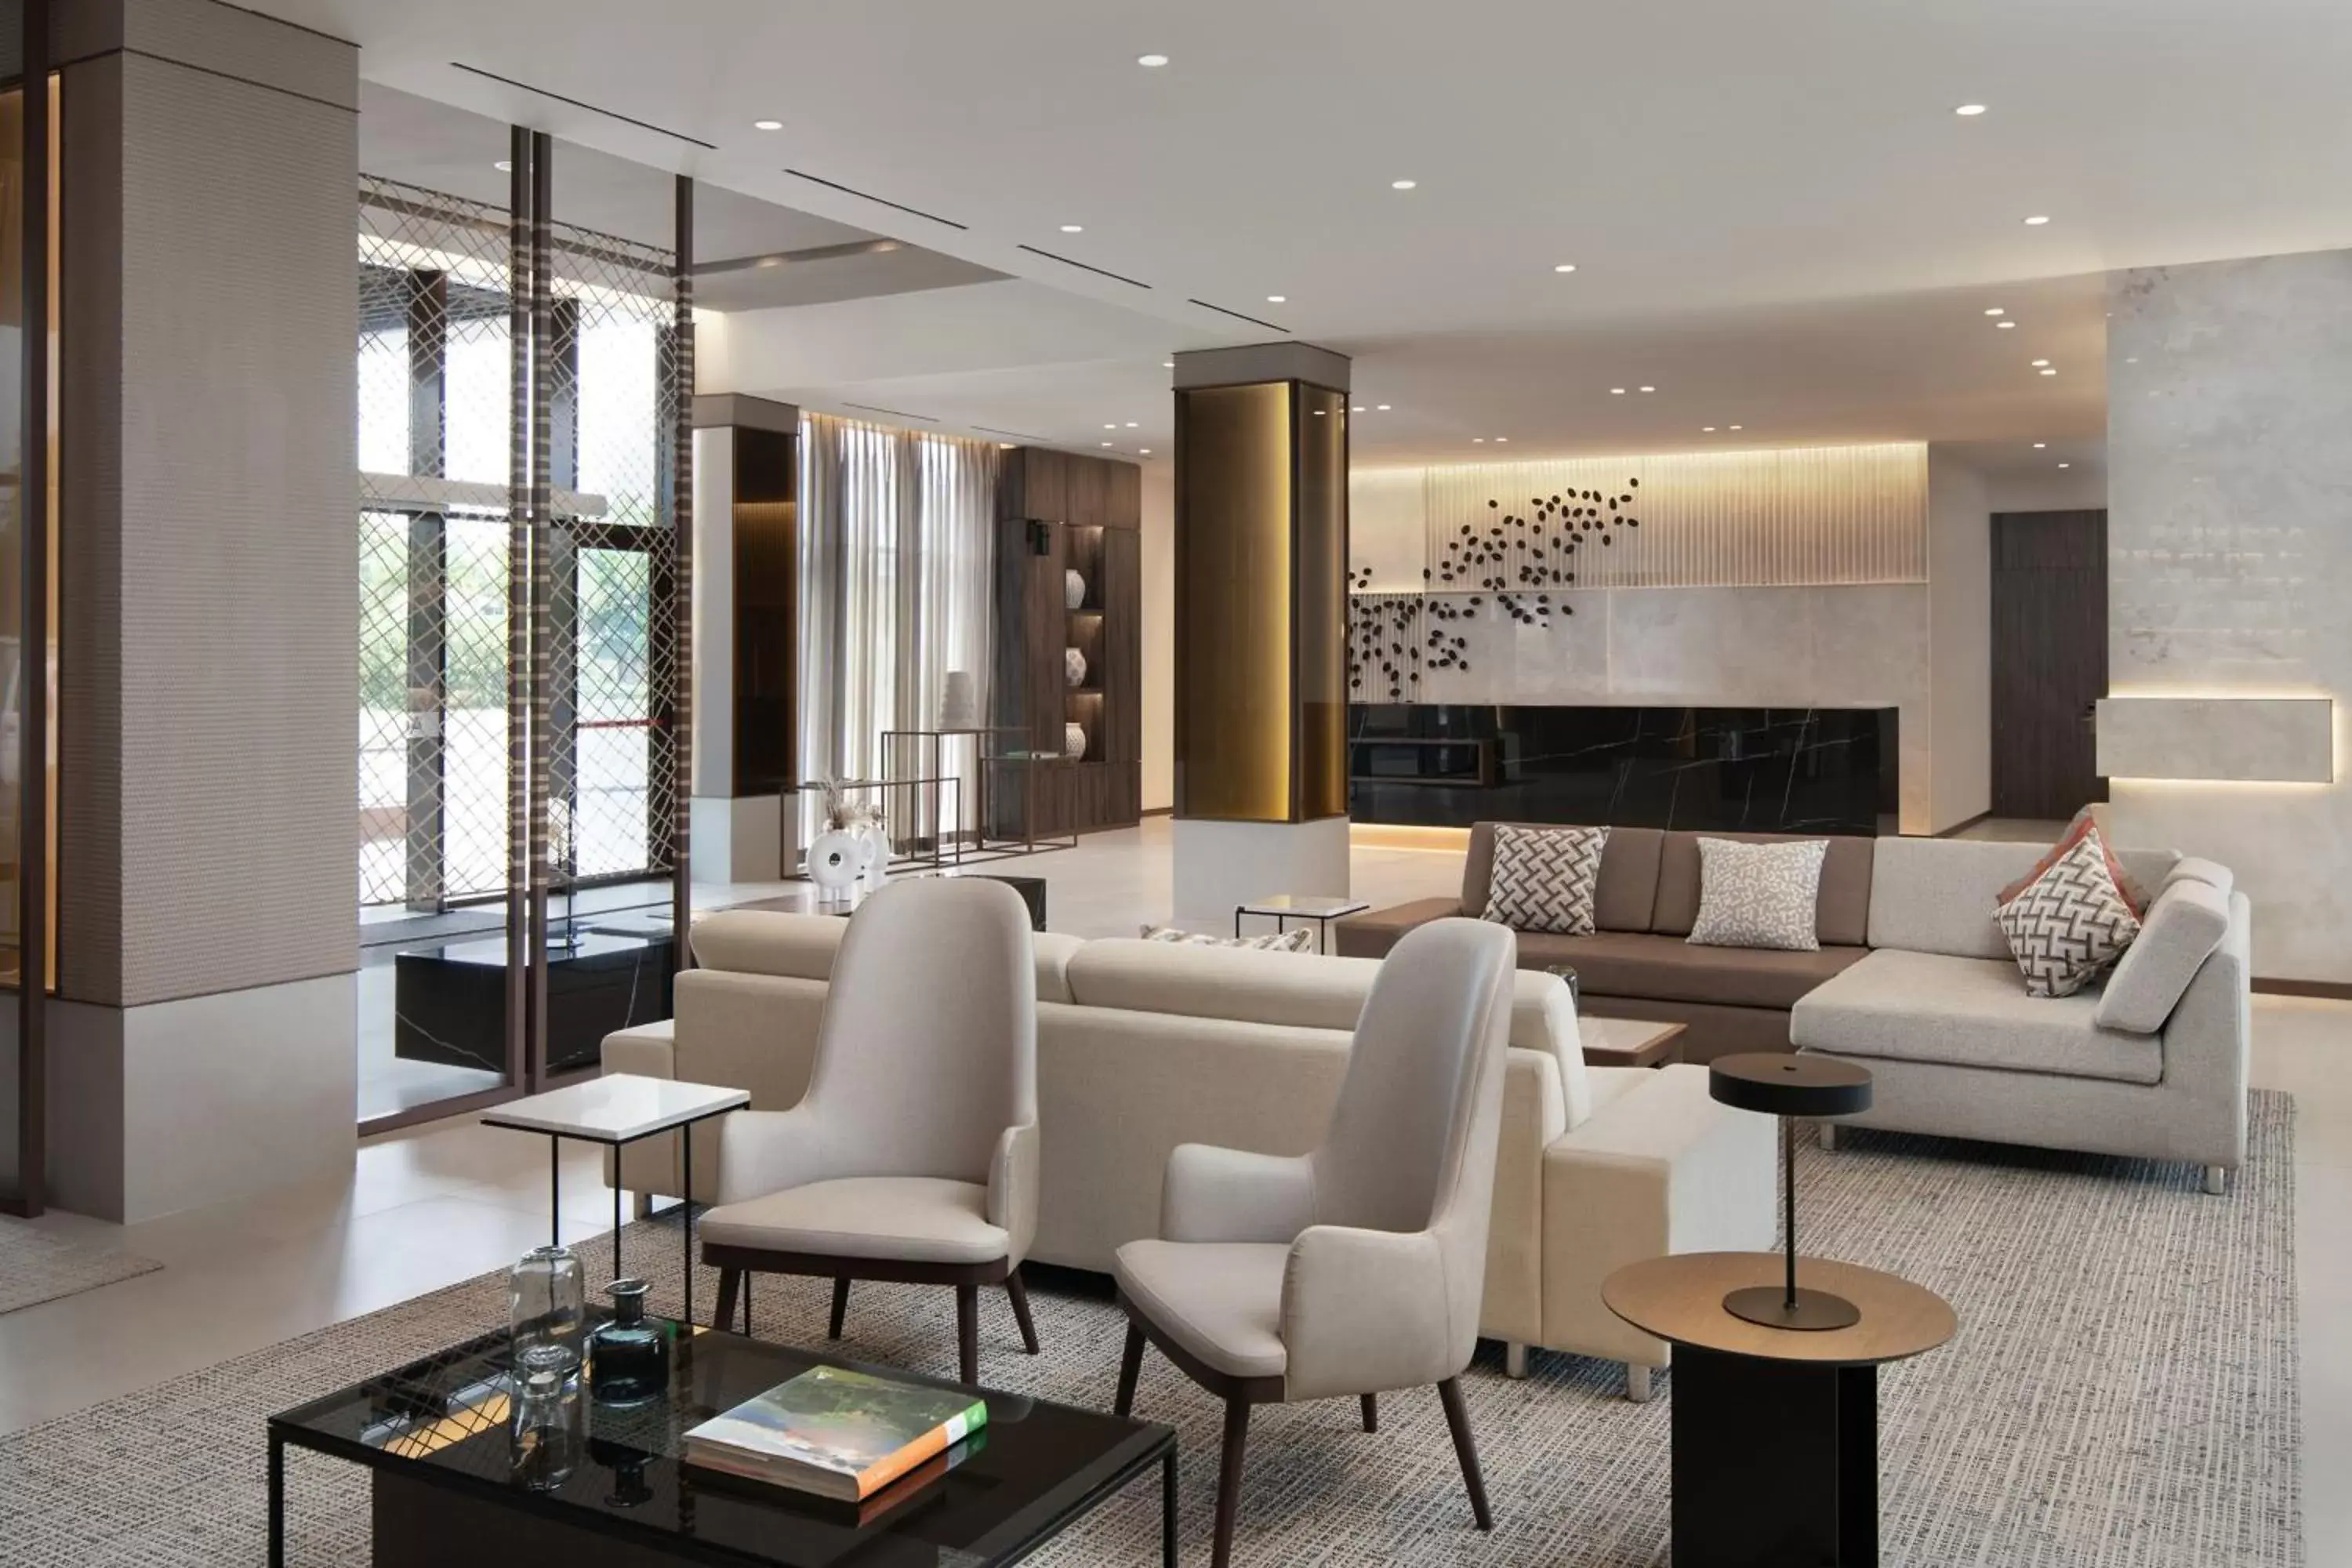 Lobby or reception, Lobby/Reception in AC Hotel by Marriott Punta Cana